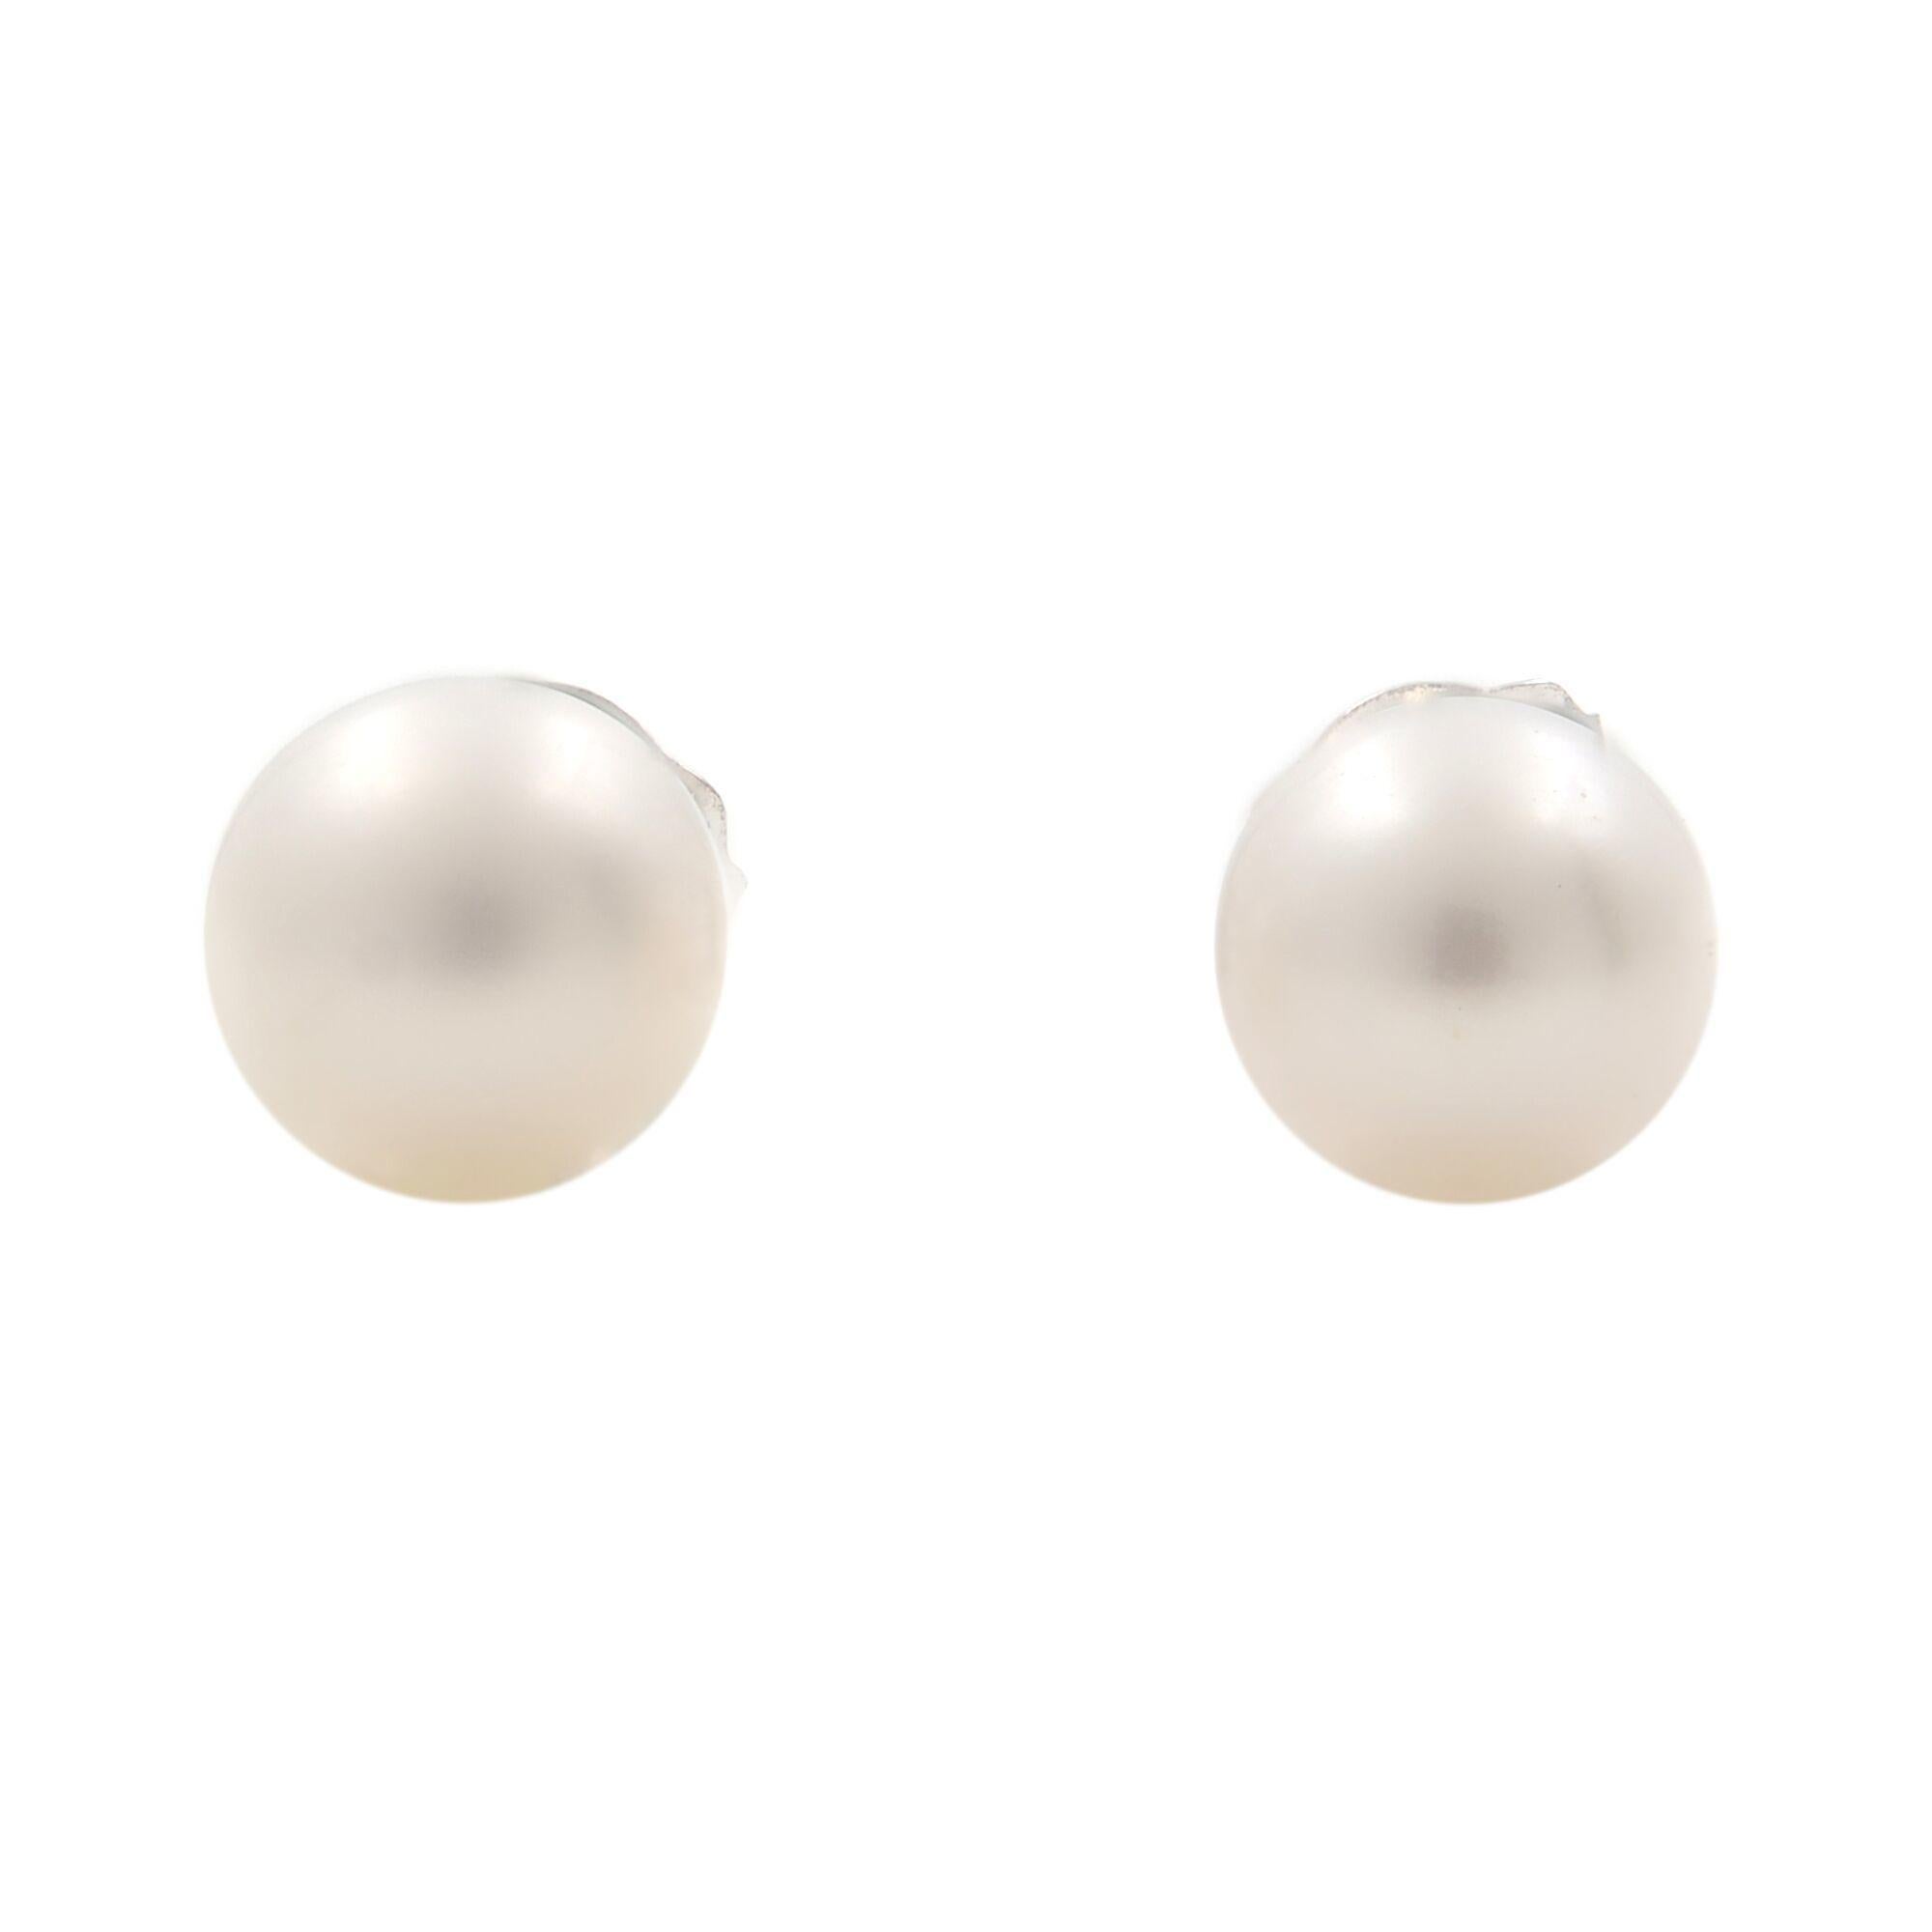 Modern Rachel Koen Small White Natural Pearl Stud Earrings 14K White Gold For Sale